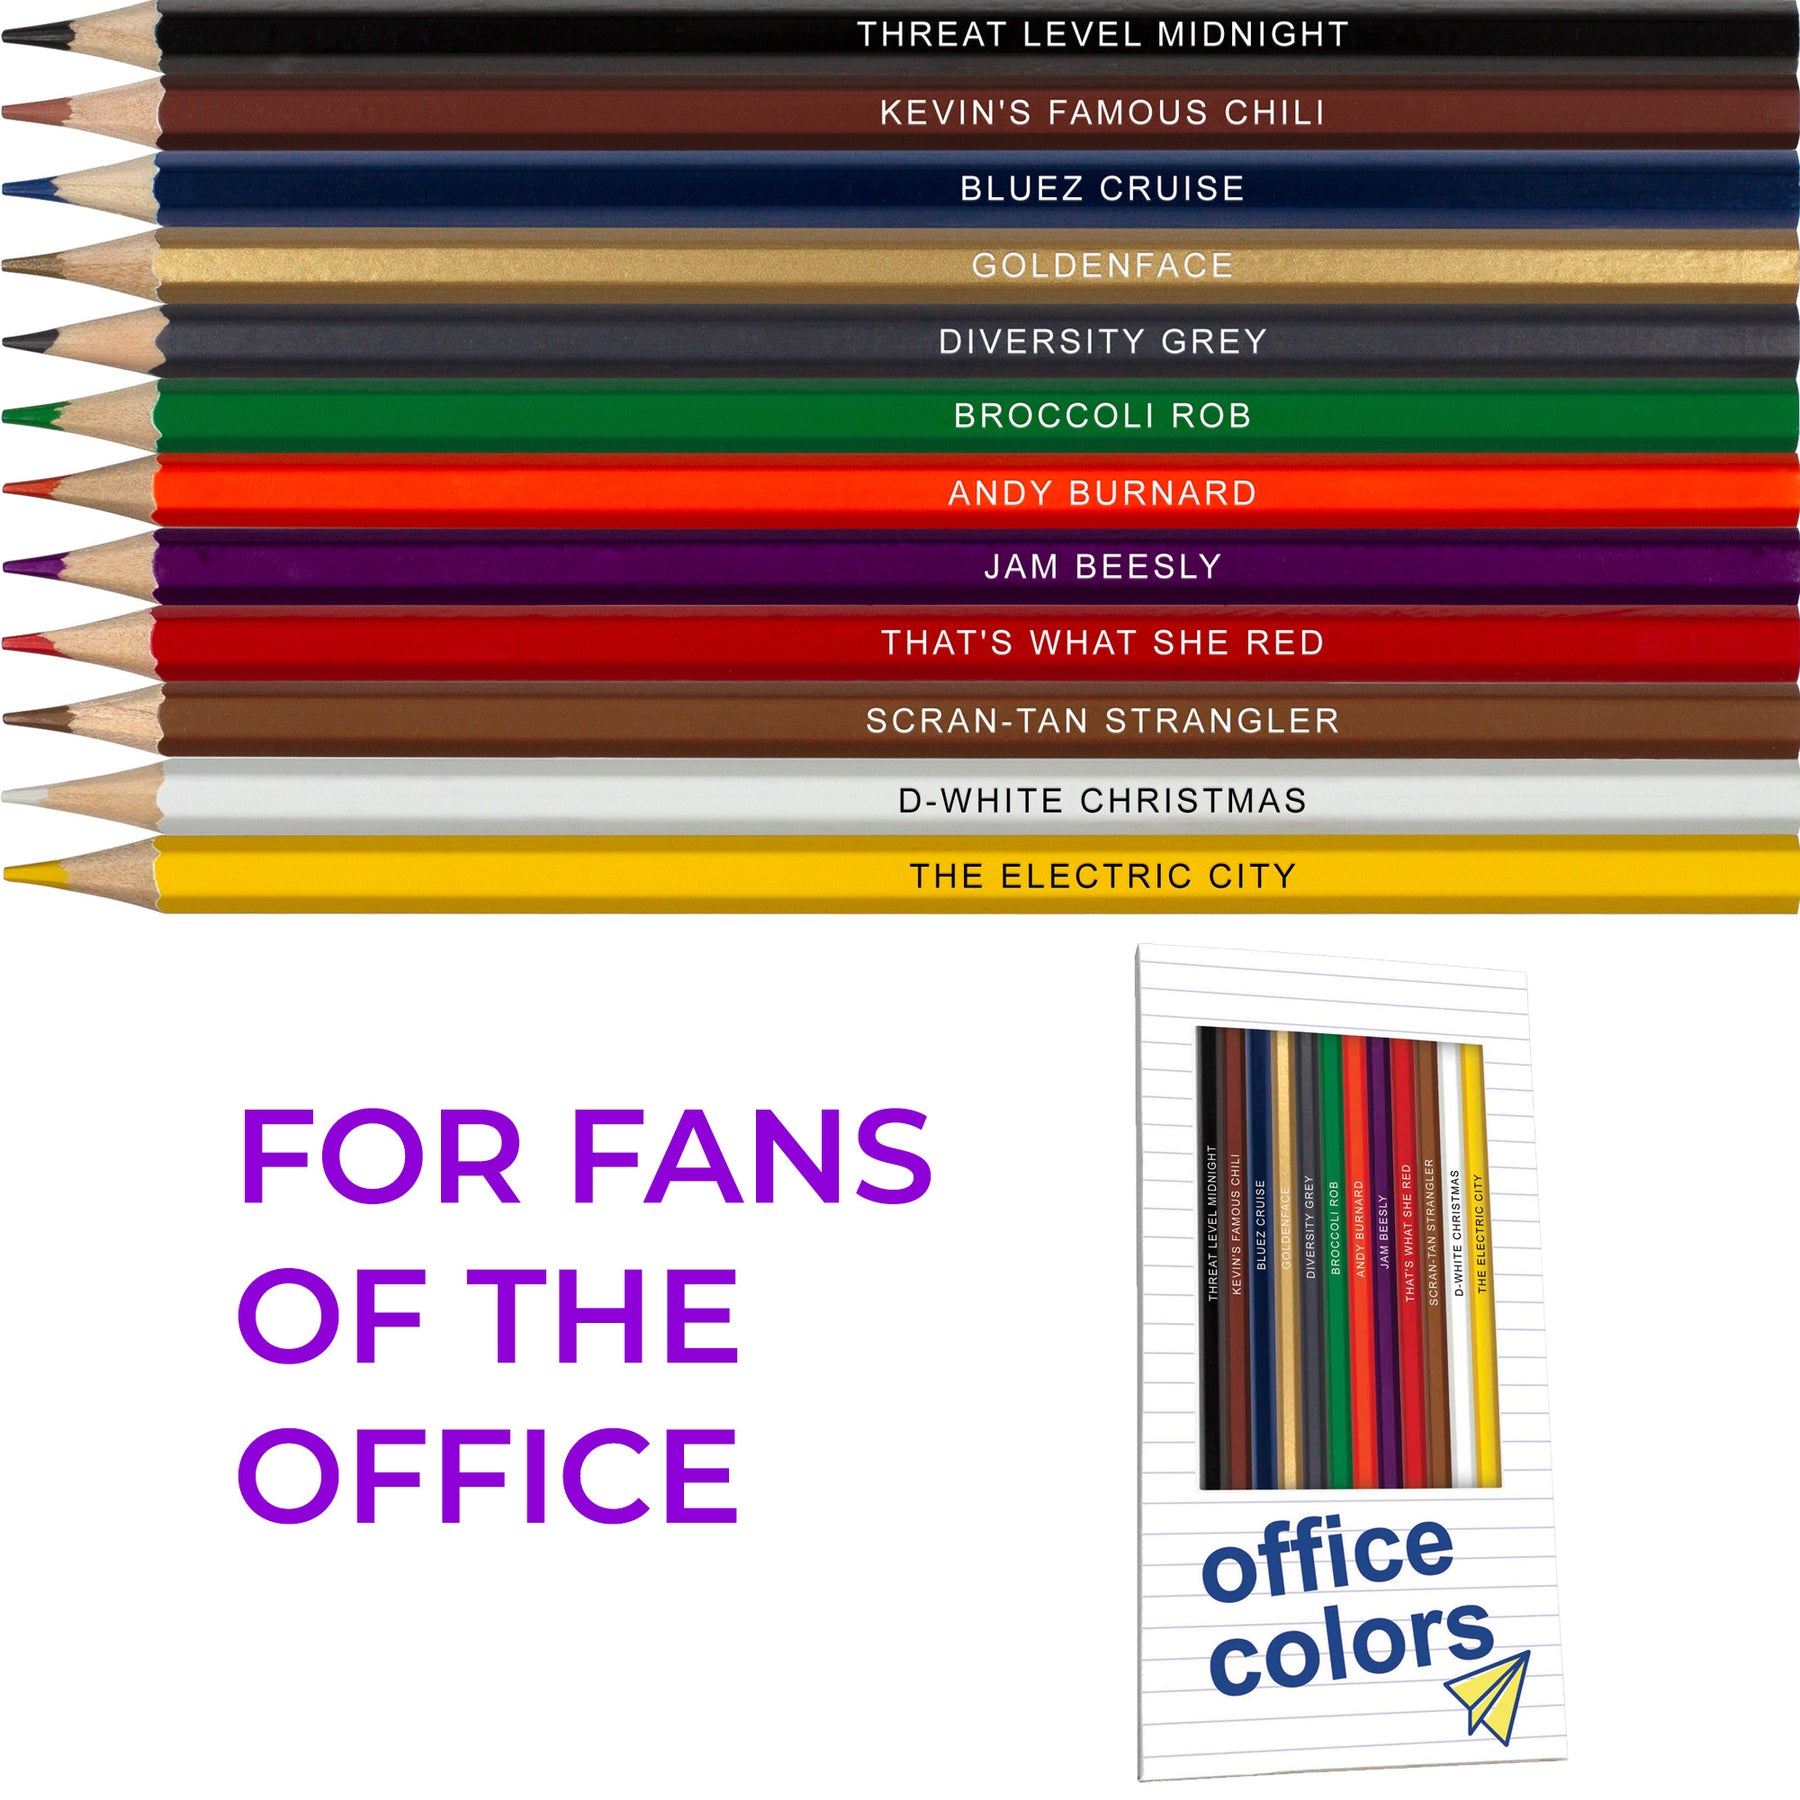 https://popcolors.com/cdn/shop/products/3-colored-pencils-cult-classic-sitcoms-pack_1800x1800.jpg?v=1654011725